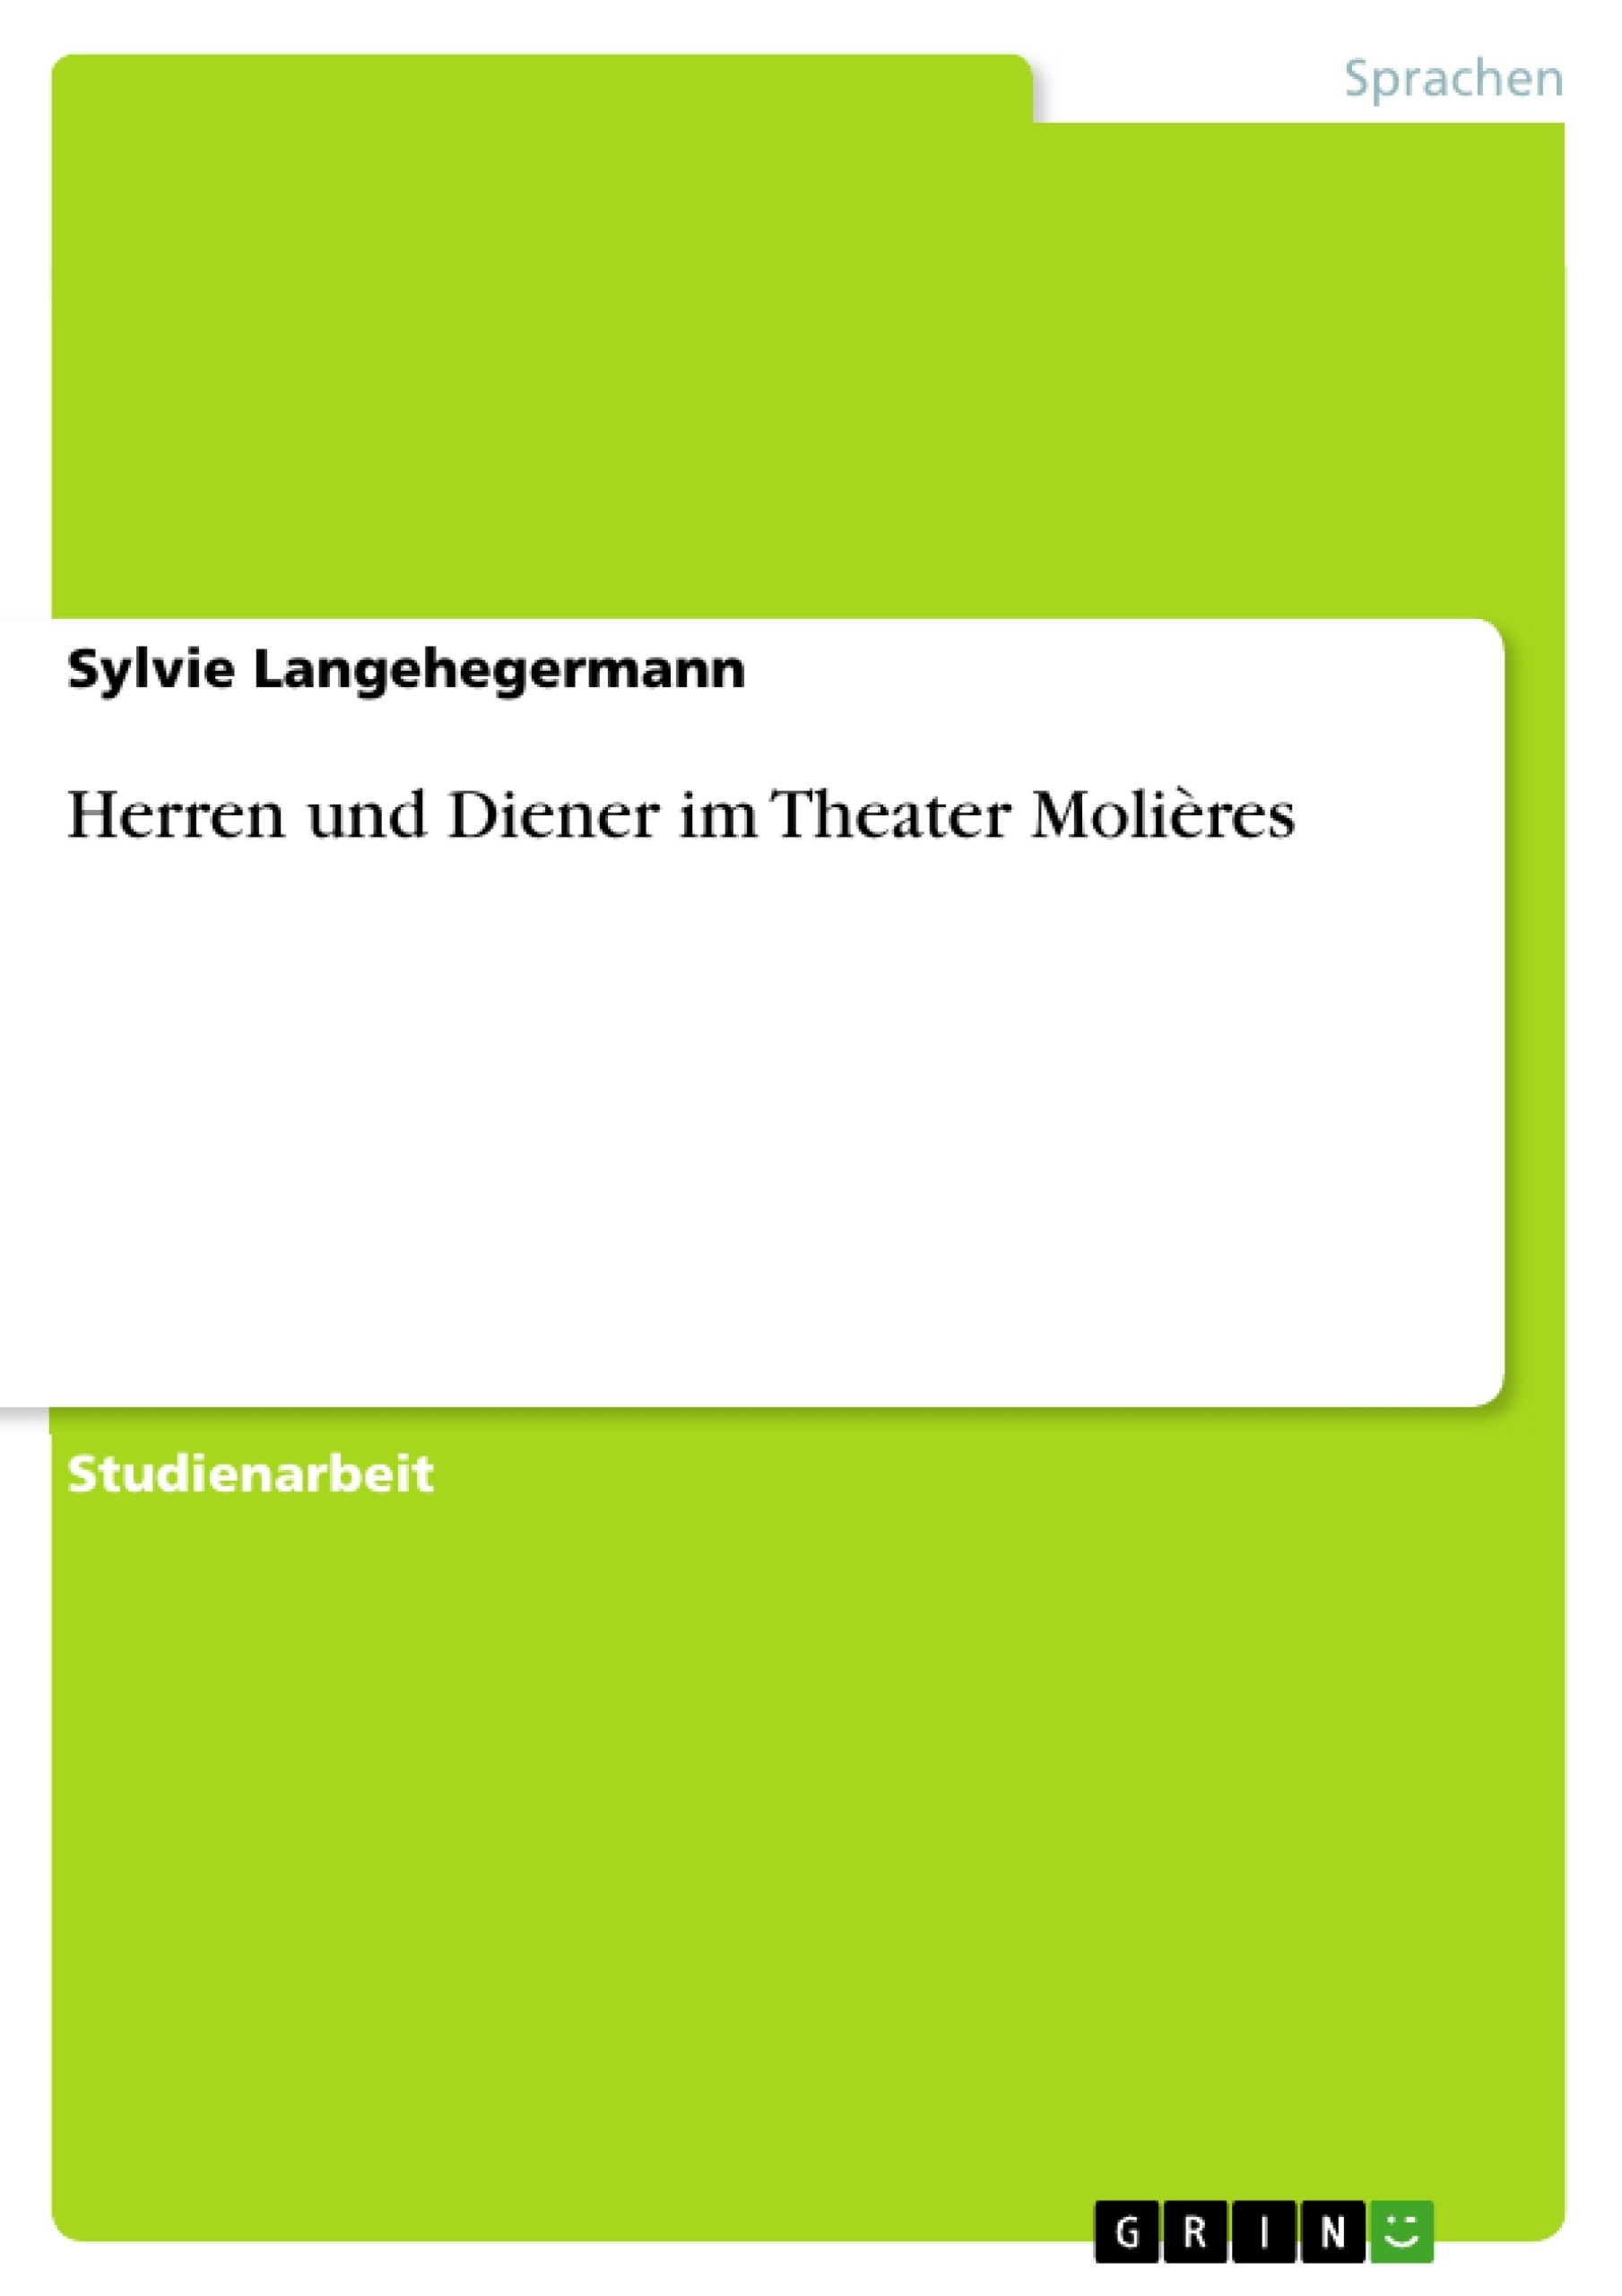 Título: Herren und Diener im Theater Molières